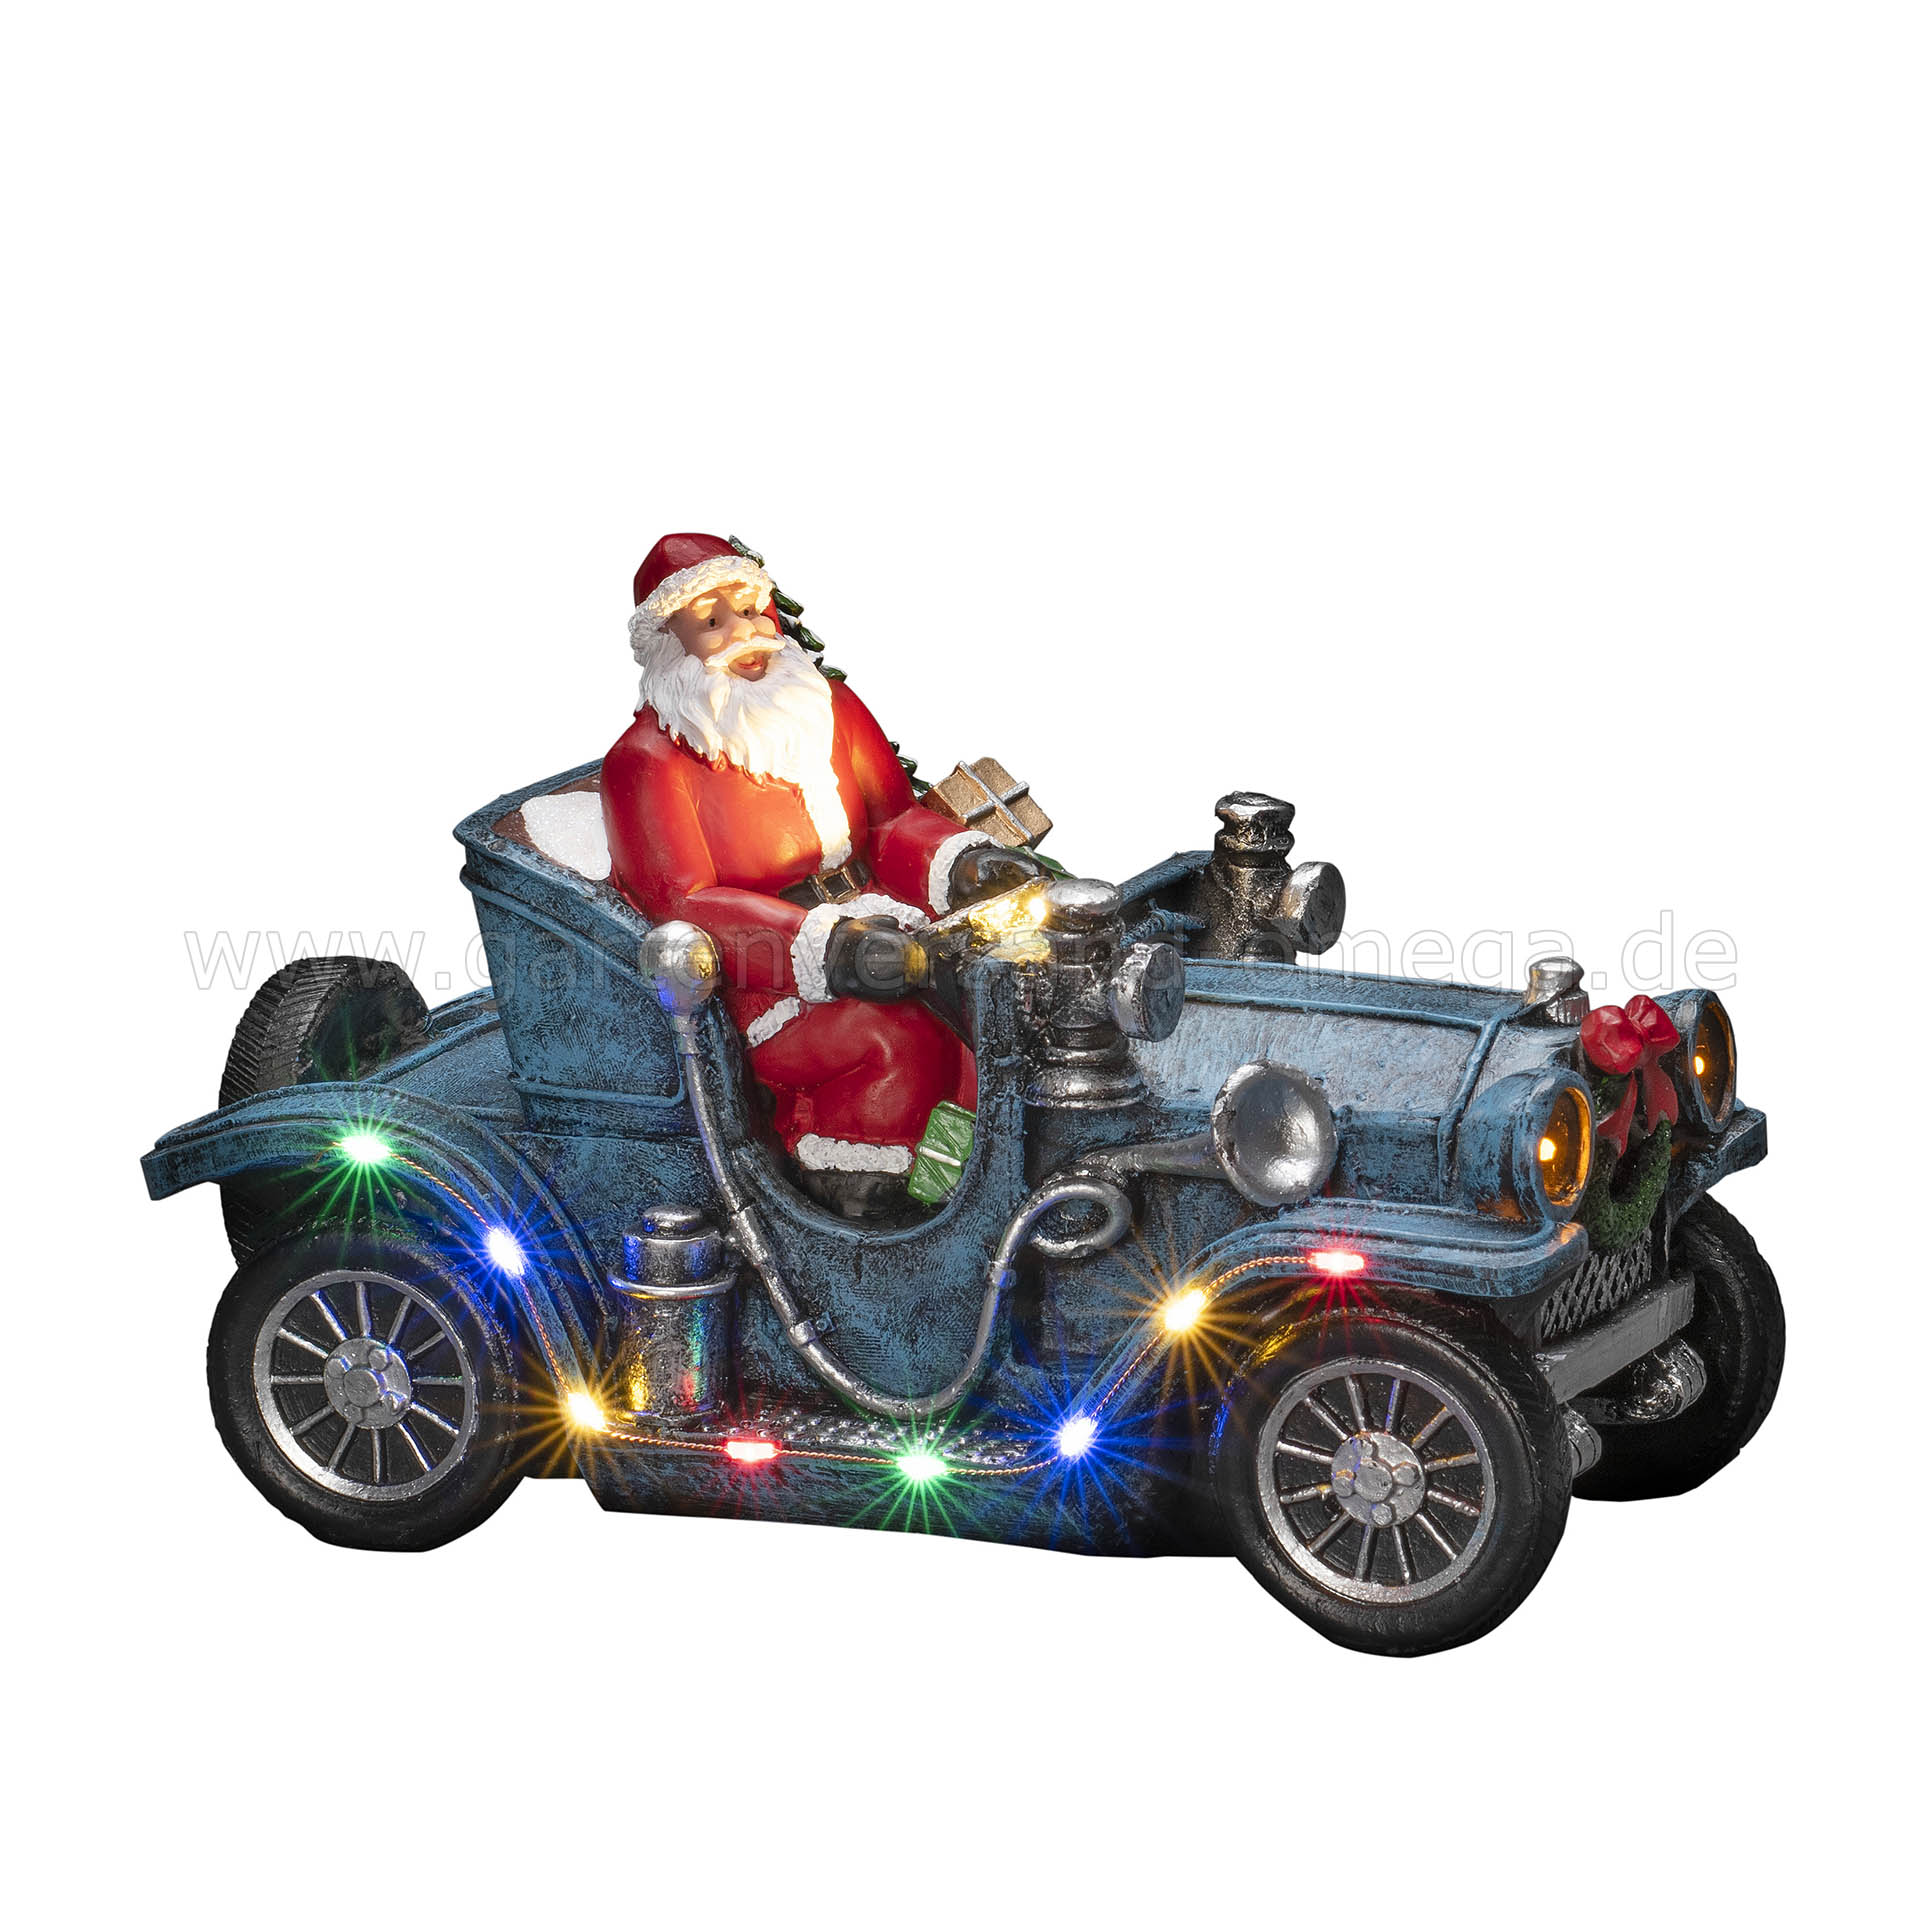 LED-Szenerie Weihnachtsmann im Schreibtischdekoration mit Deko-Auto Weihnachtsmann, LED LED-Beleuchtung Weihnachten, - Weihnachtsdeko Weihnachtsmann, Auto, Auto Oldtimer Auto LED-Figur Weihnachtsmann, Auto mit